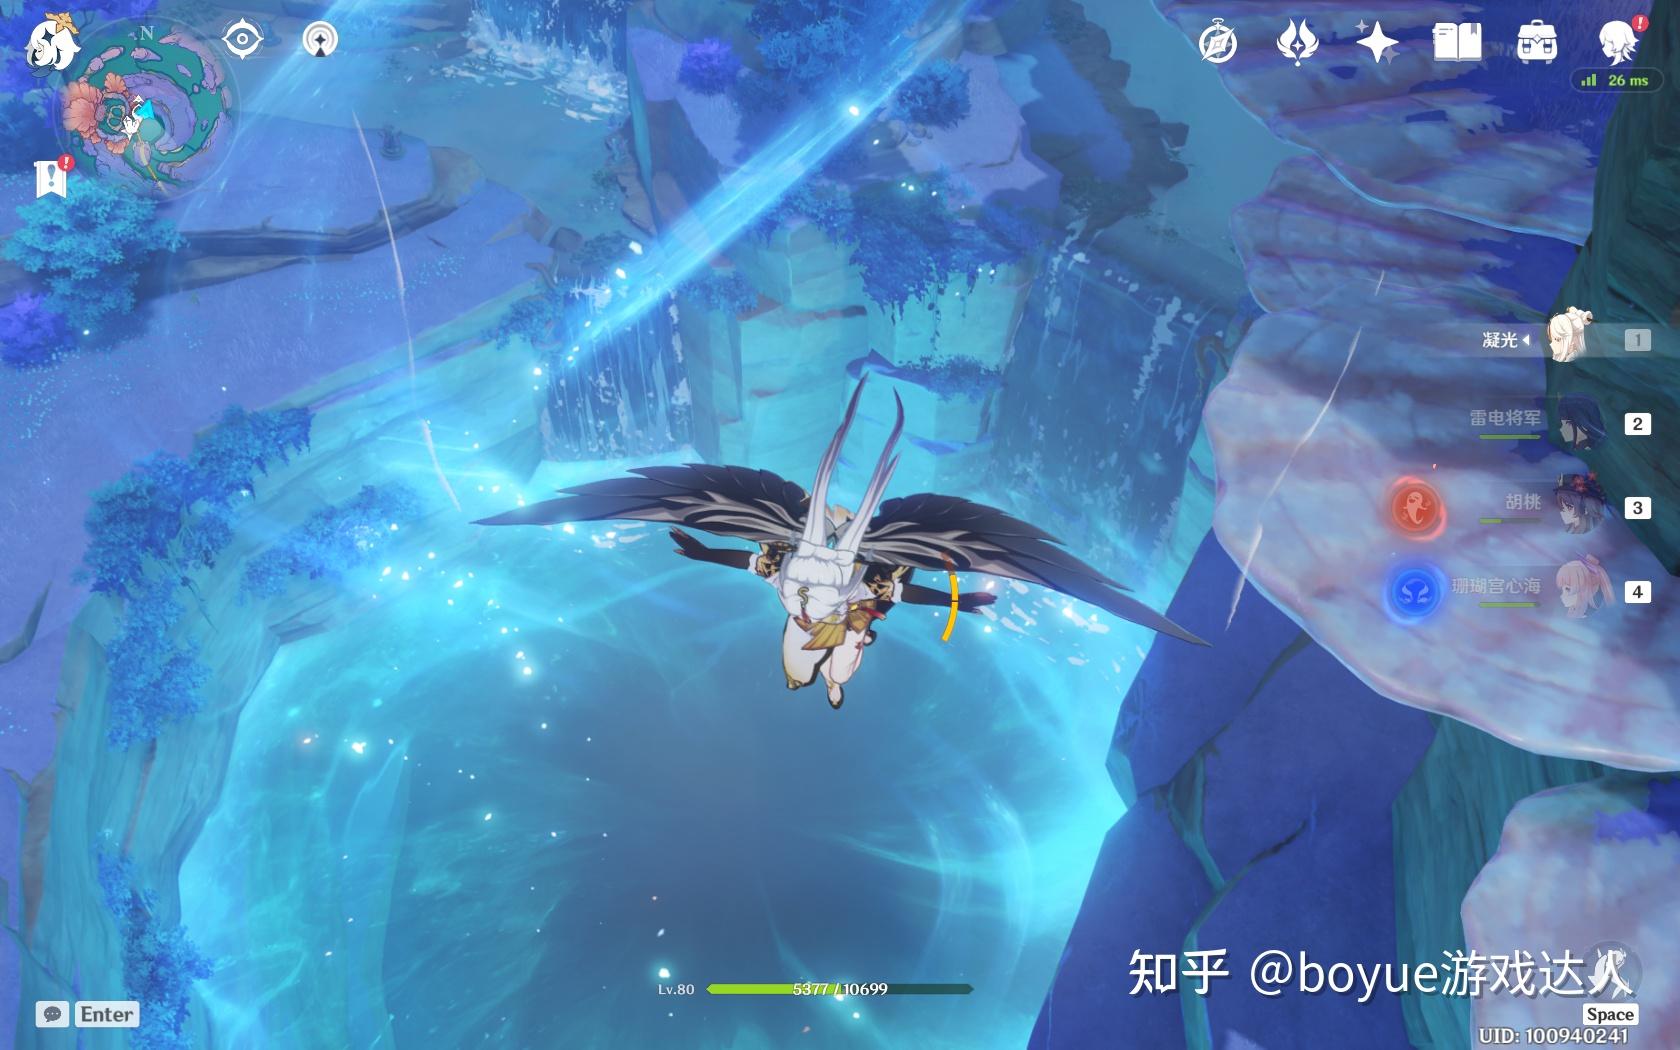 简介:在珊瑚宫的下方有一个大漩涡,目前玩家会做到与它相关的任务,但